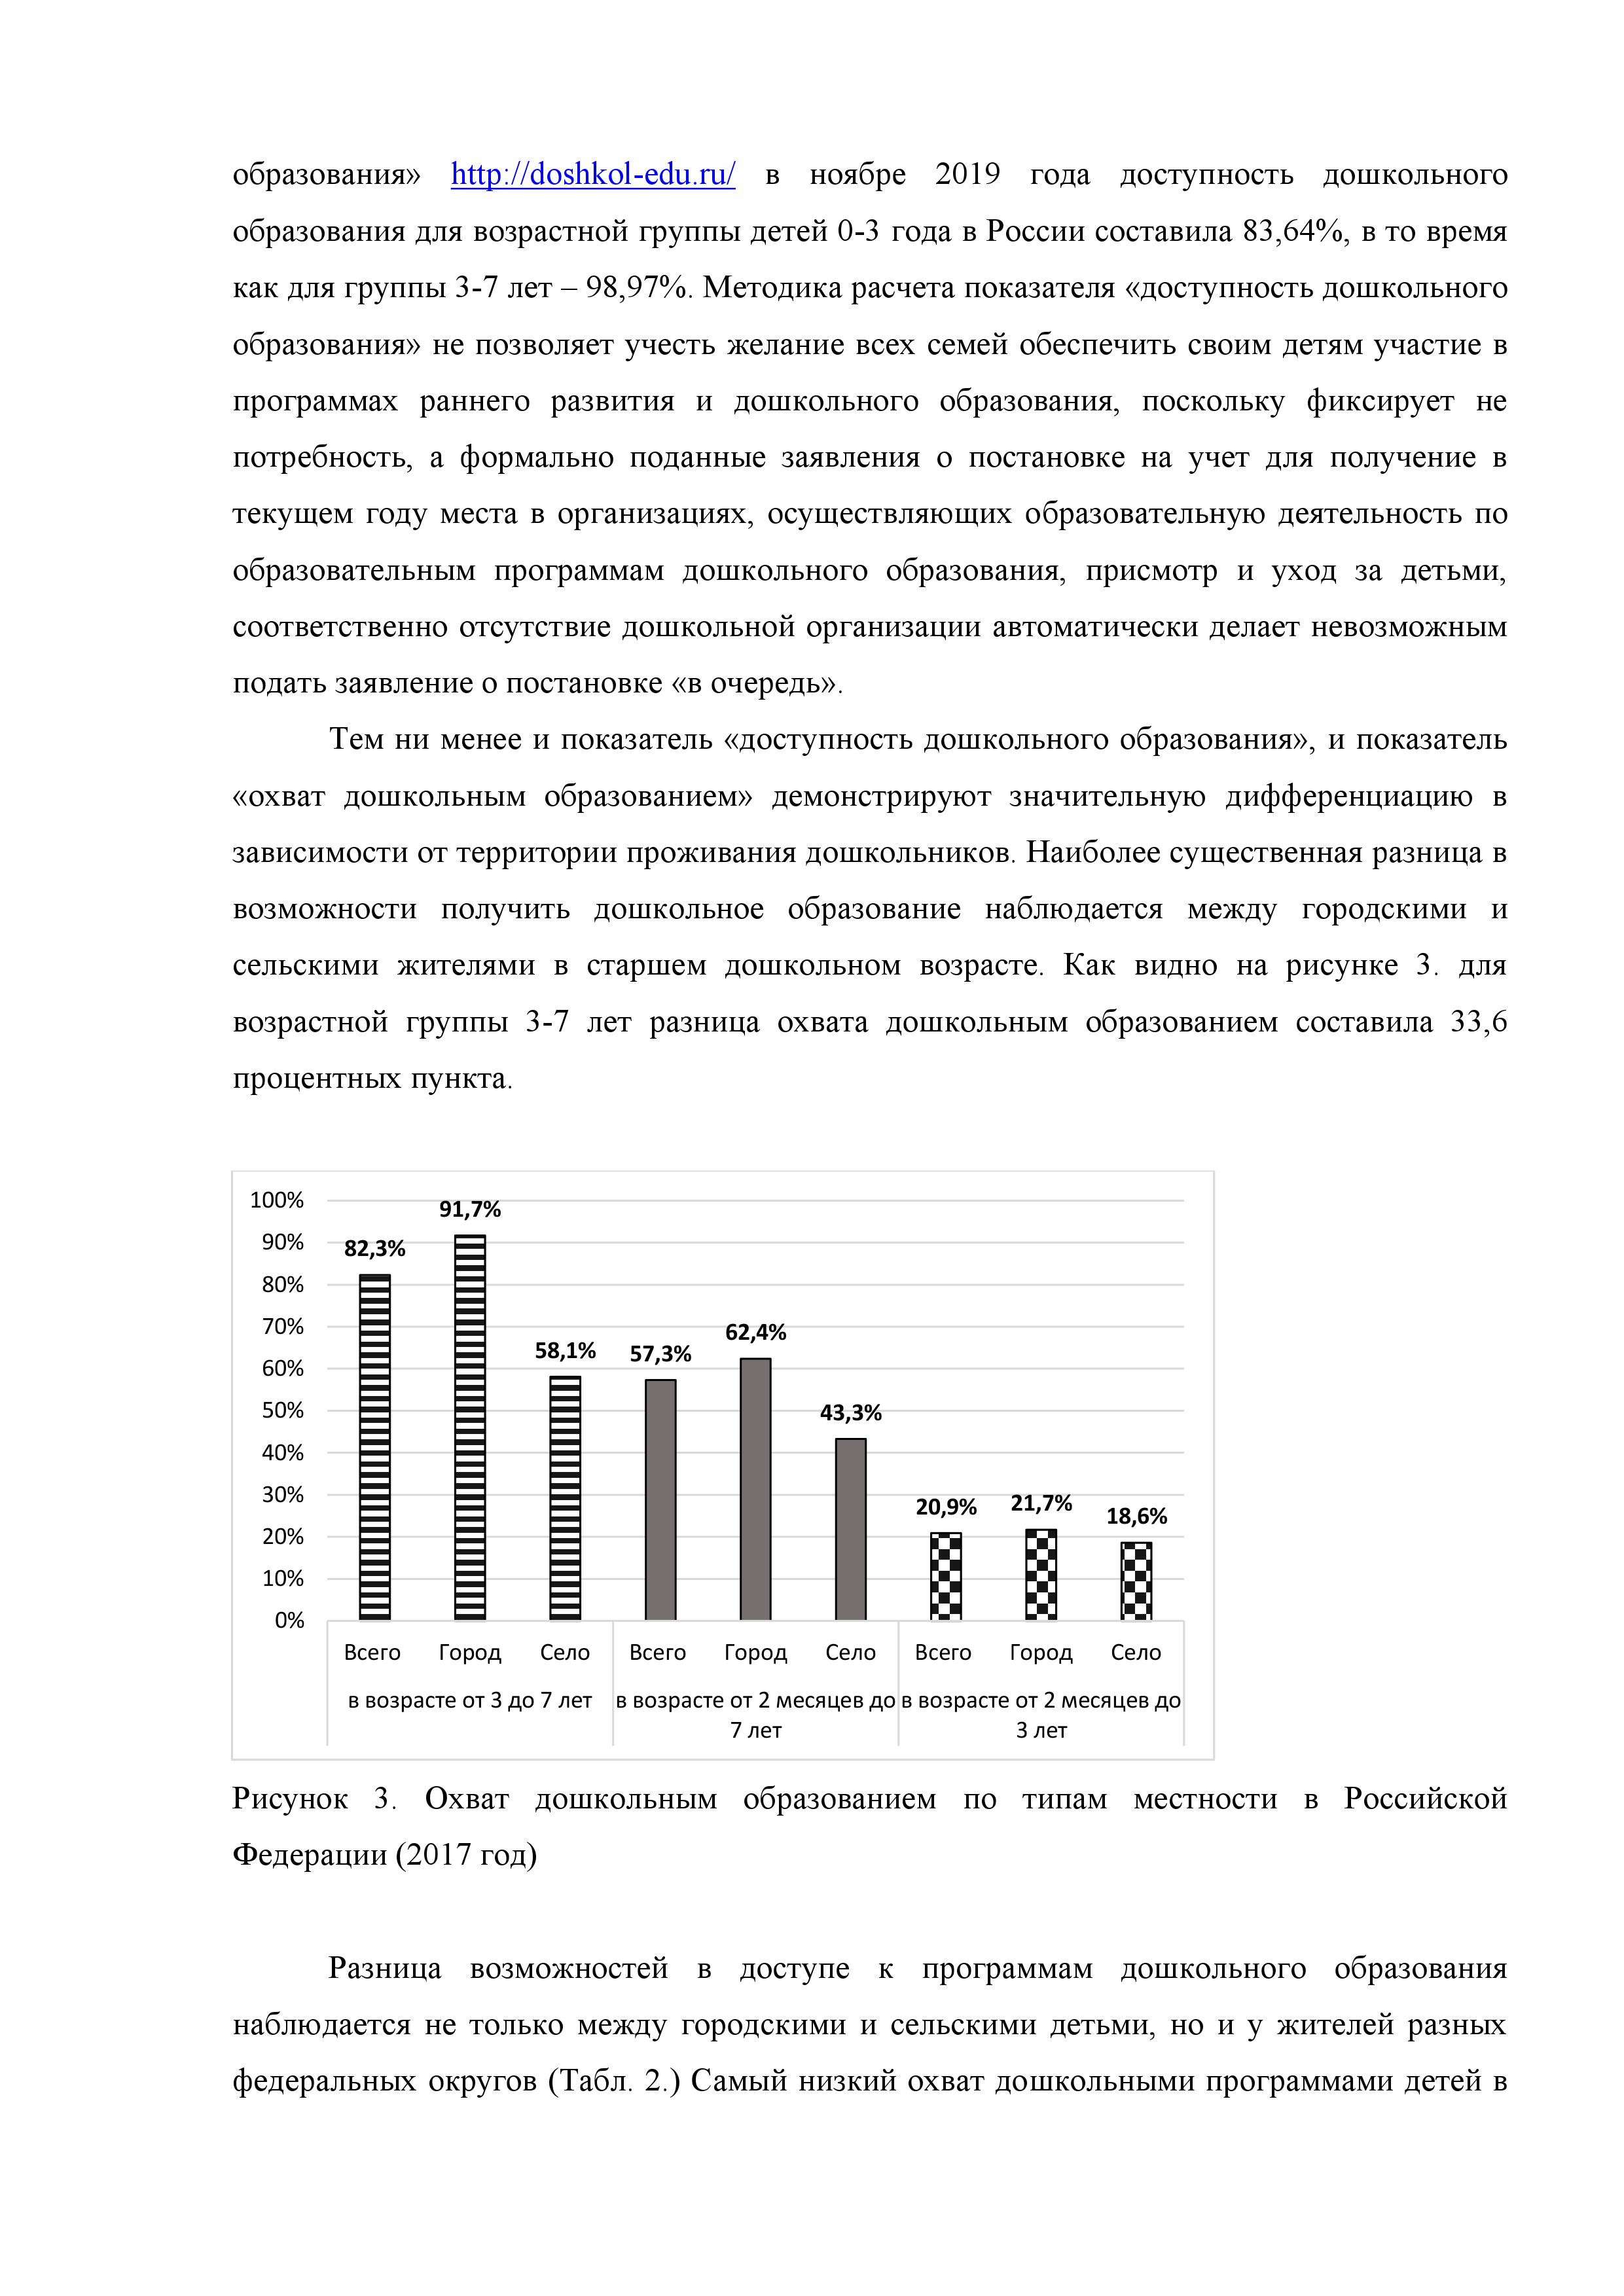 Угрозы, возможности и перспективы развития системы дошкольного образования Российской Федерации до 2035 г. - фото 5